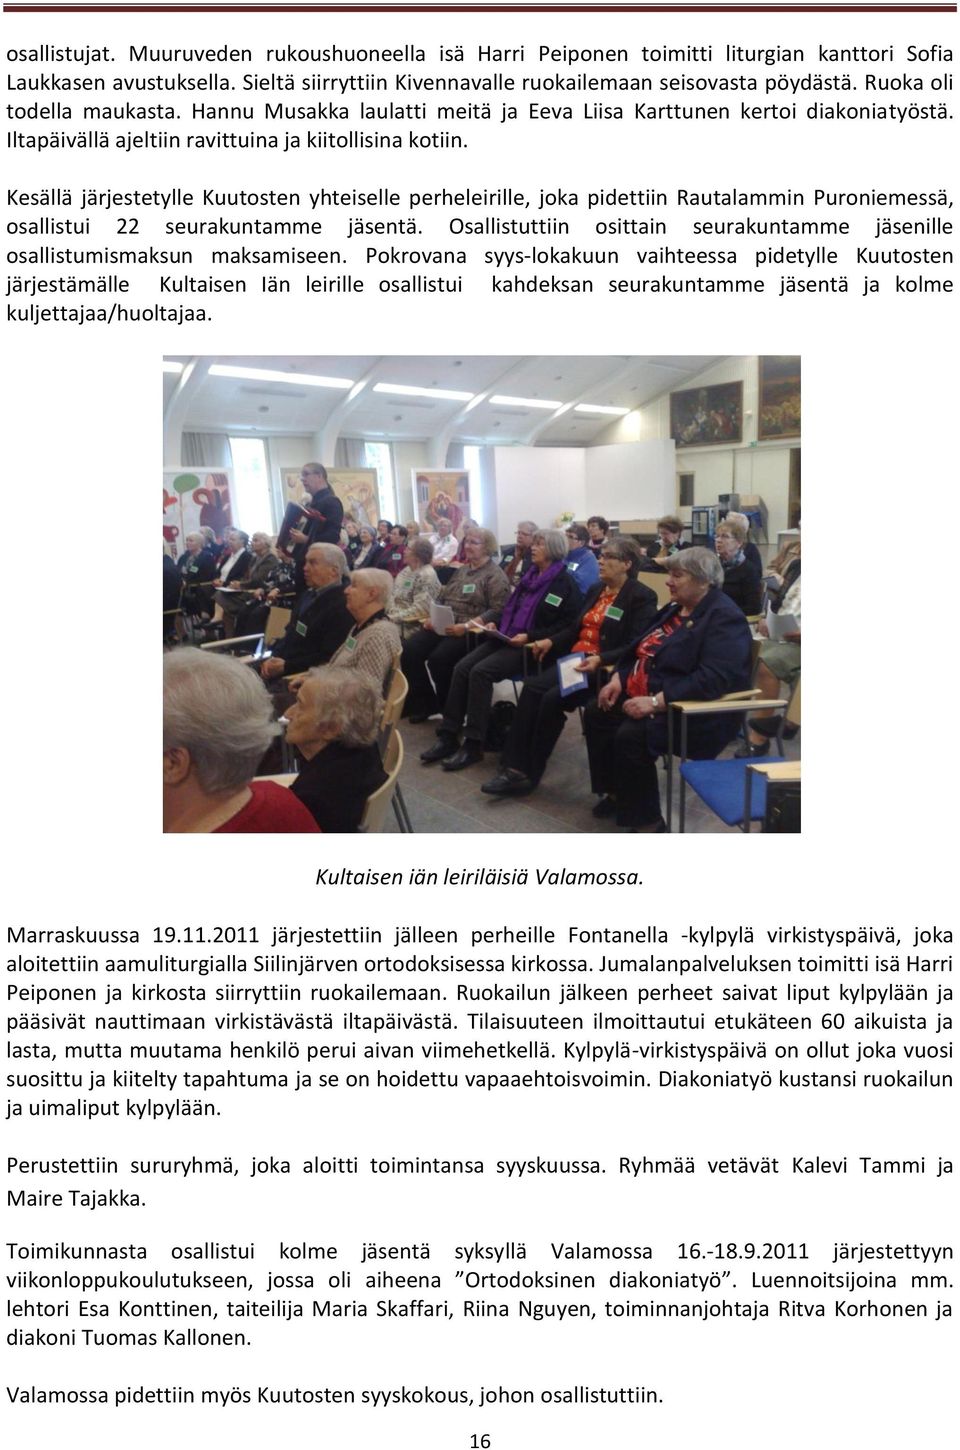 Kesällä järjestetylle Kuutosten yhteiselle perheleirille, joka pidettiin Rautalammin Puroniemessä, osallistui 22 seurakuntamme jäsentä.